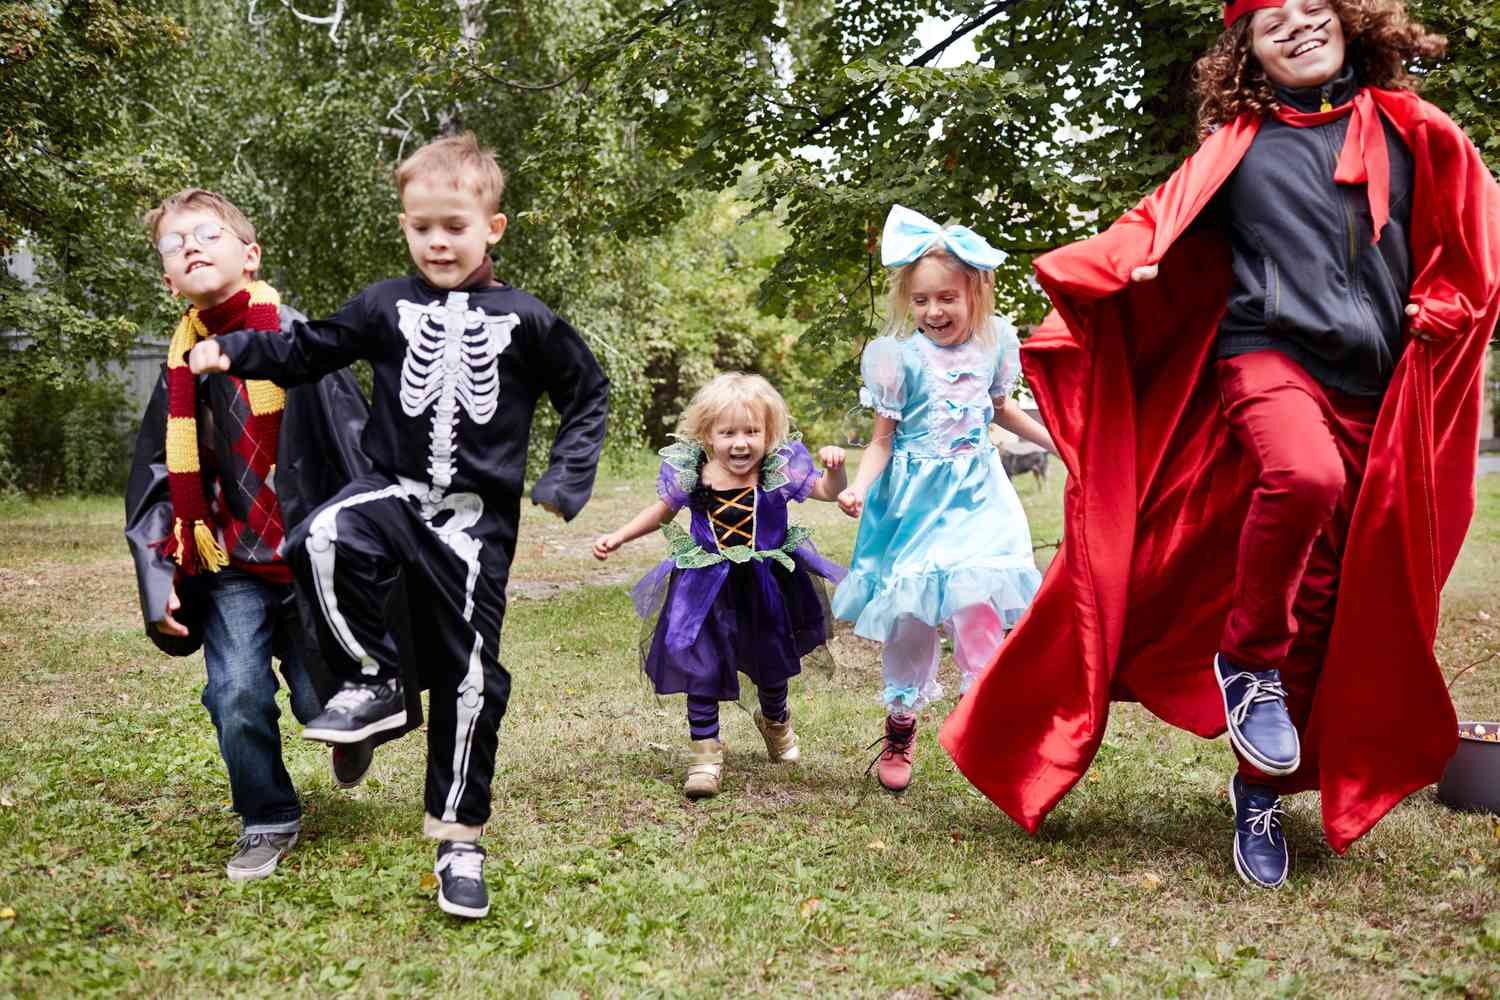 kids in Halloween costumes dancing